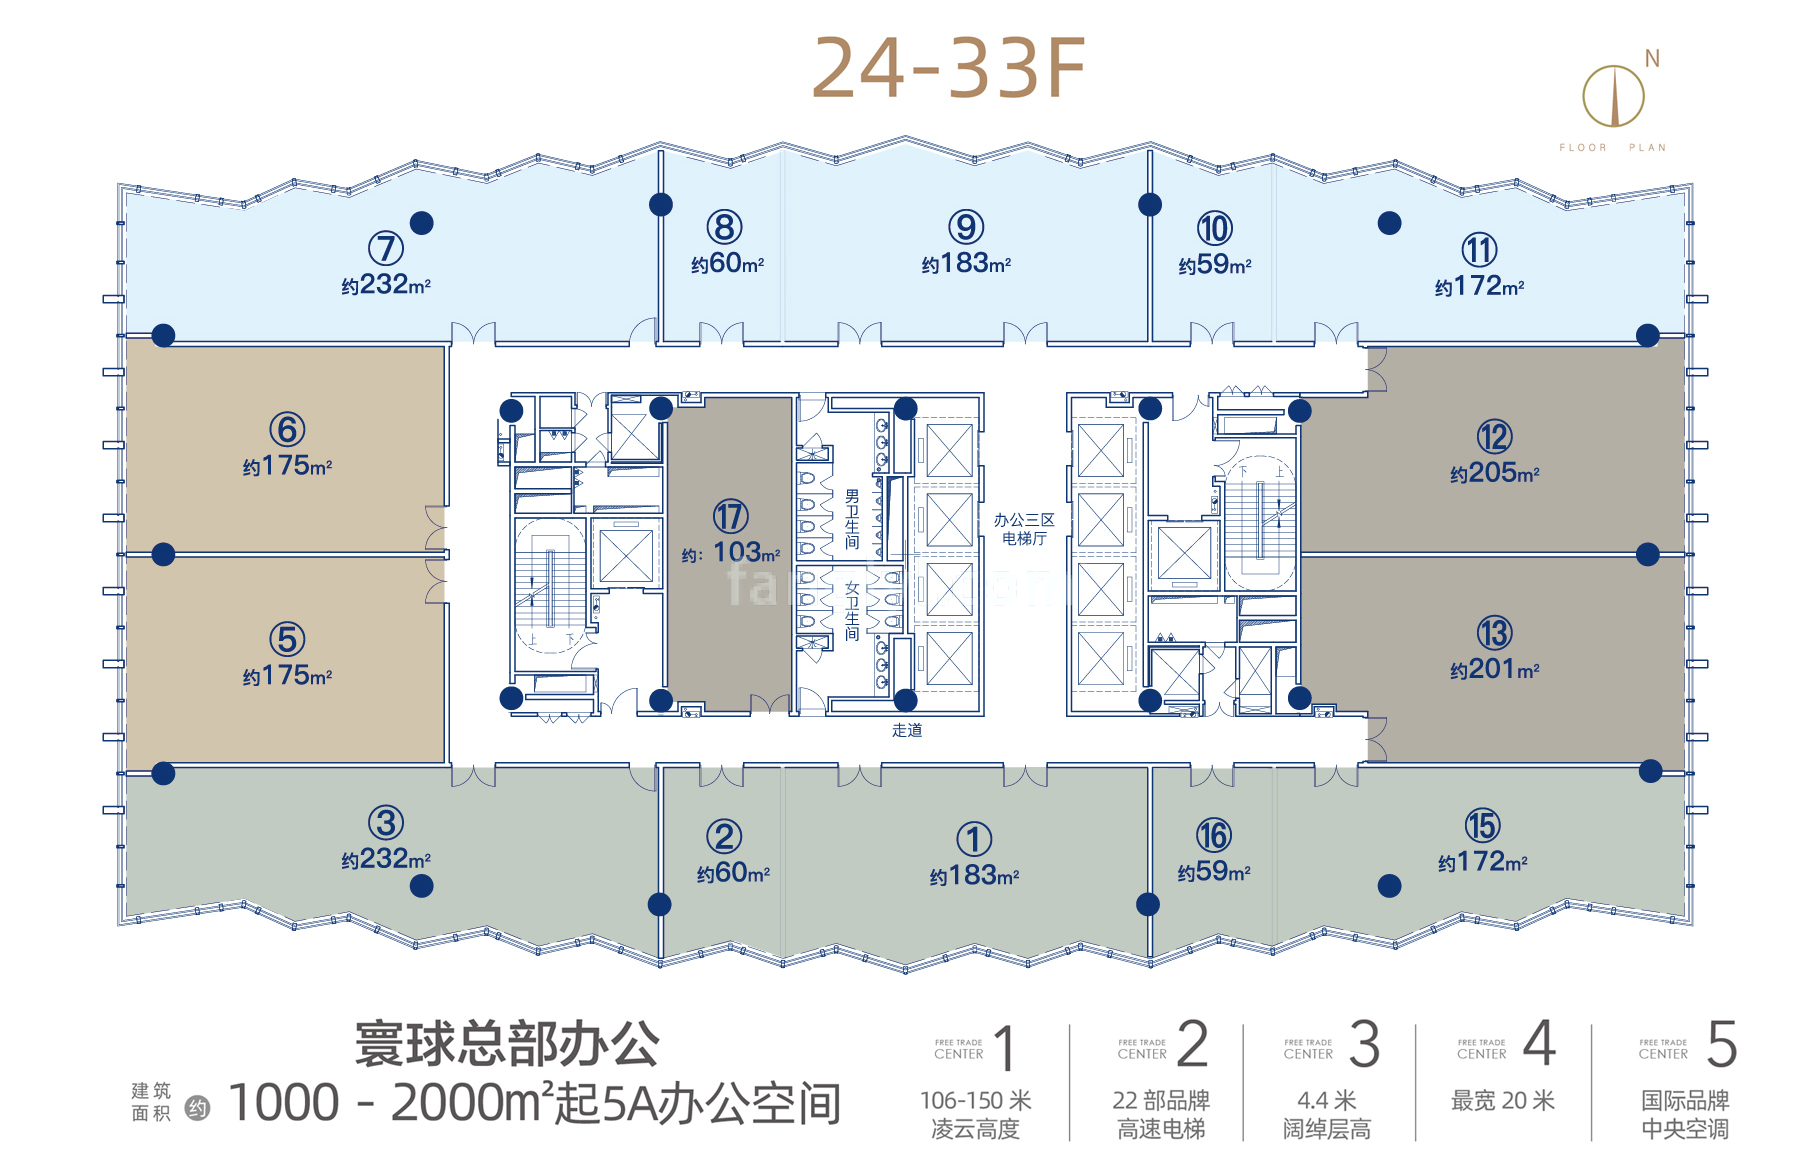 中交国际自贸中心 写字楼 24-33F环球总部办公 建筑面积60-232㎡